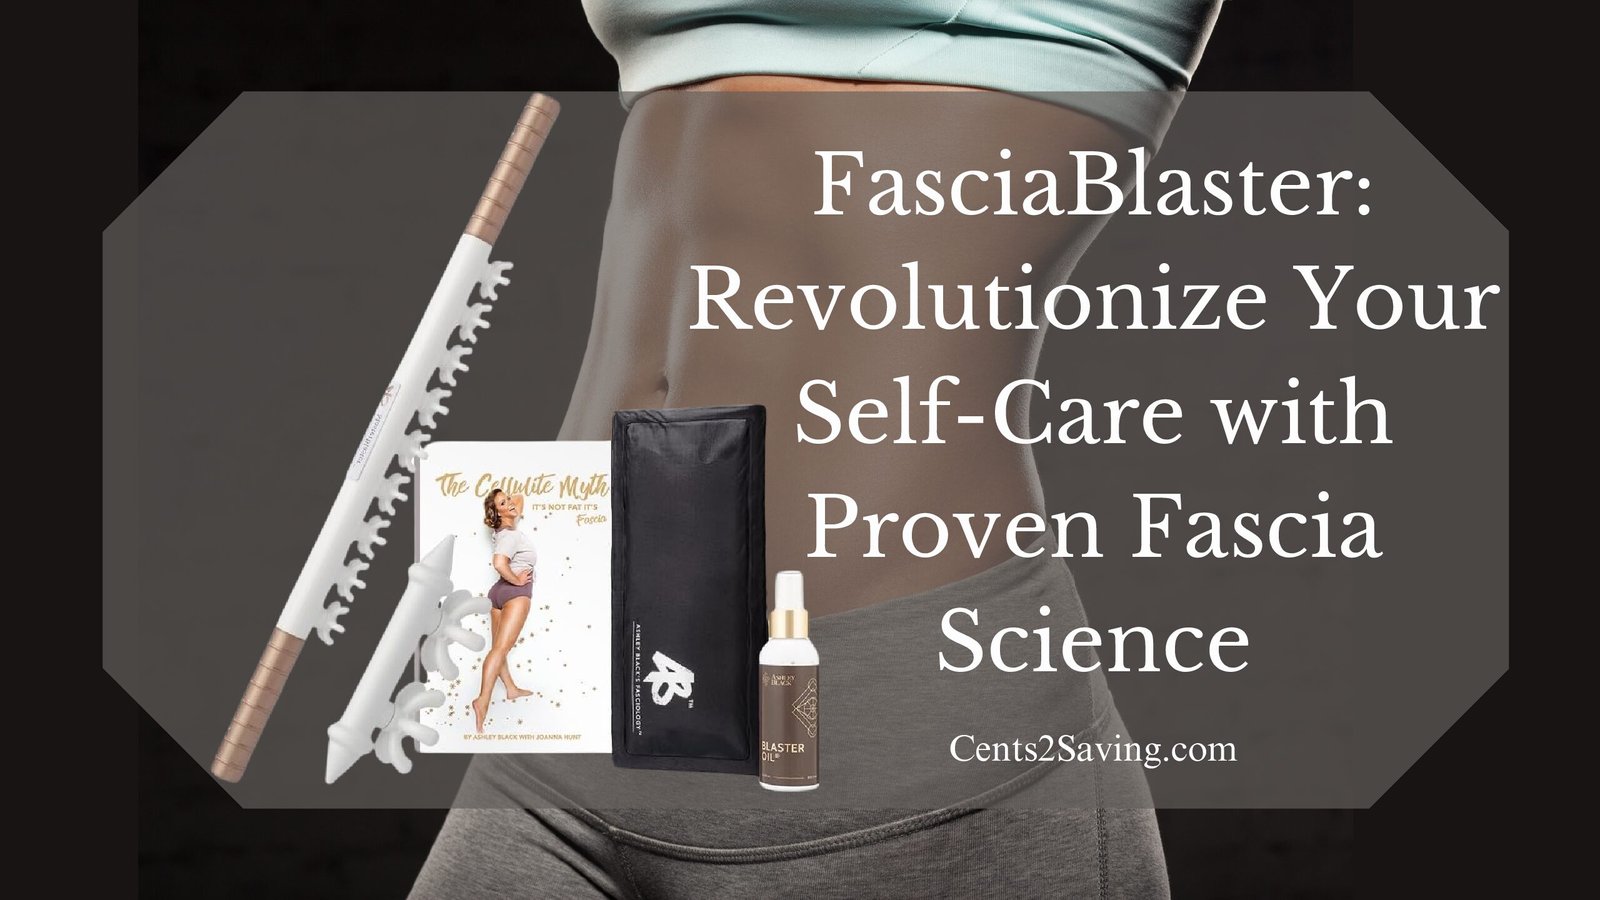 FasciaBlaster: Revolutionize Your Self-Care with Proven Fascia Science